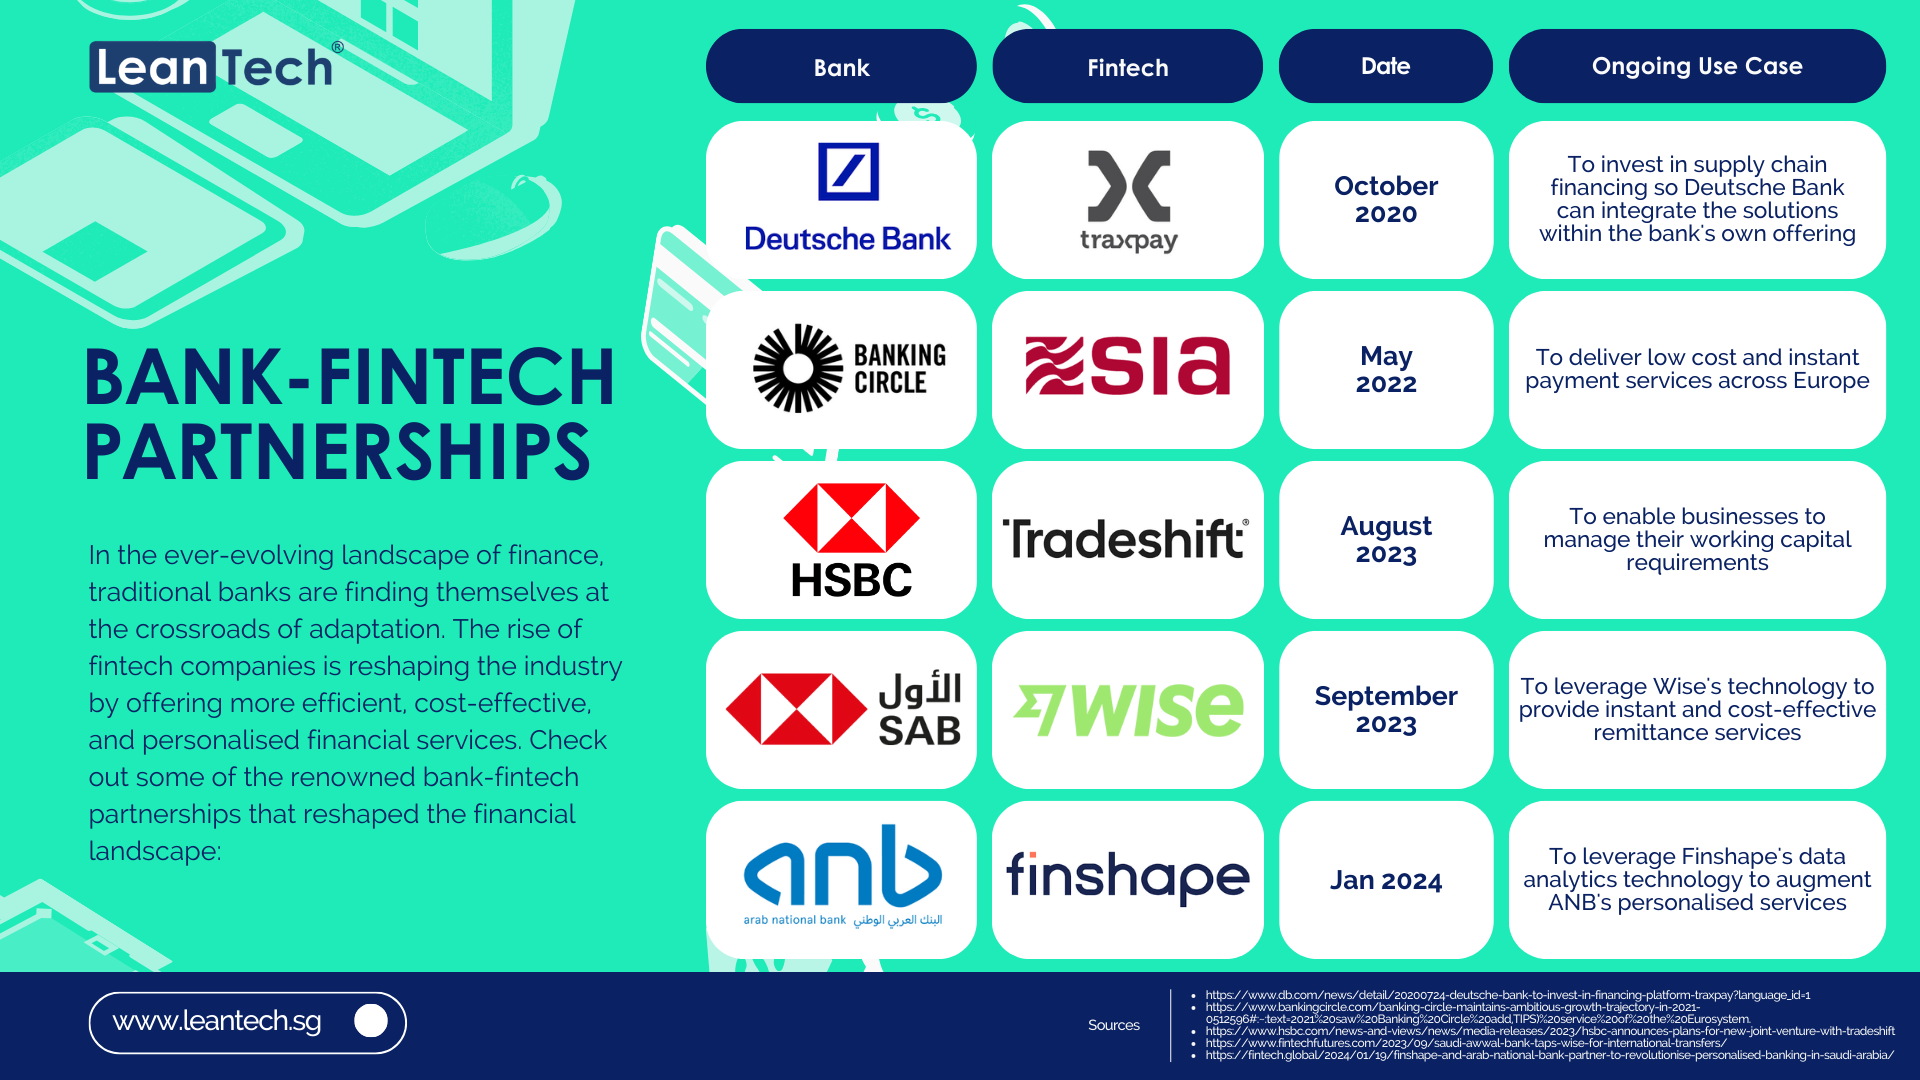 Bank-fintech partnerships